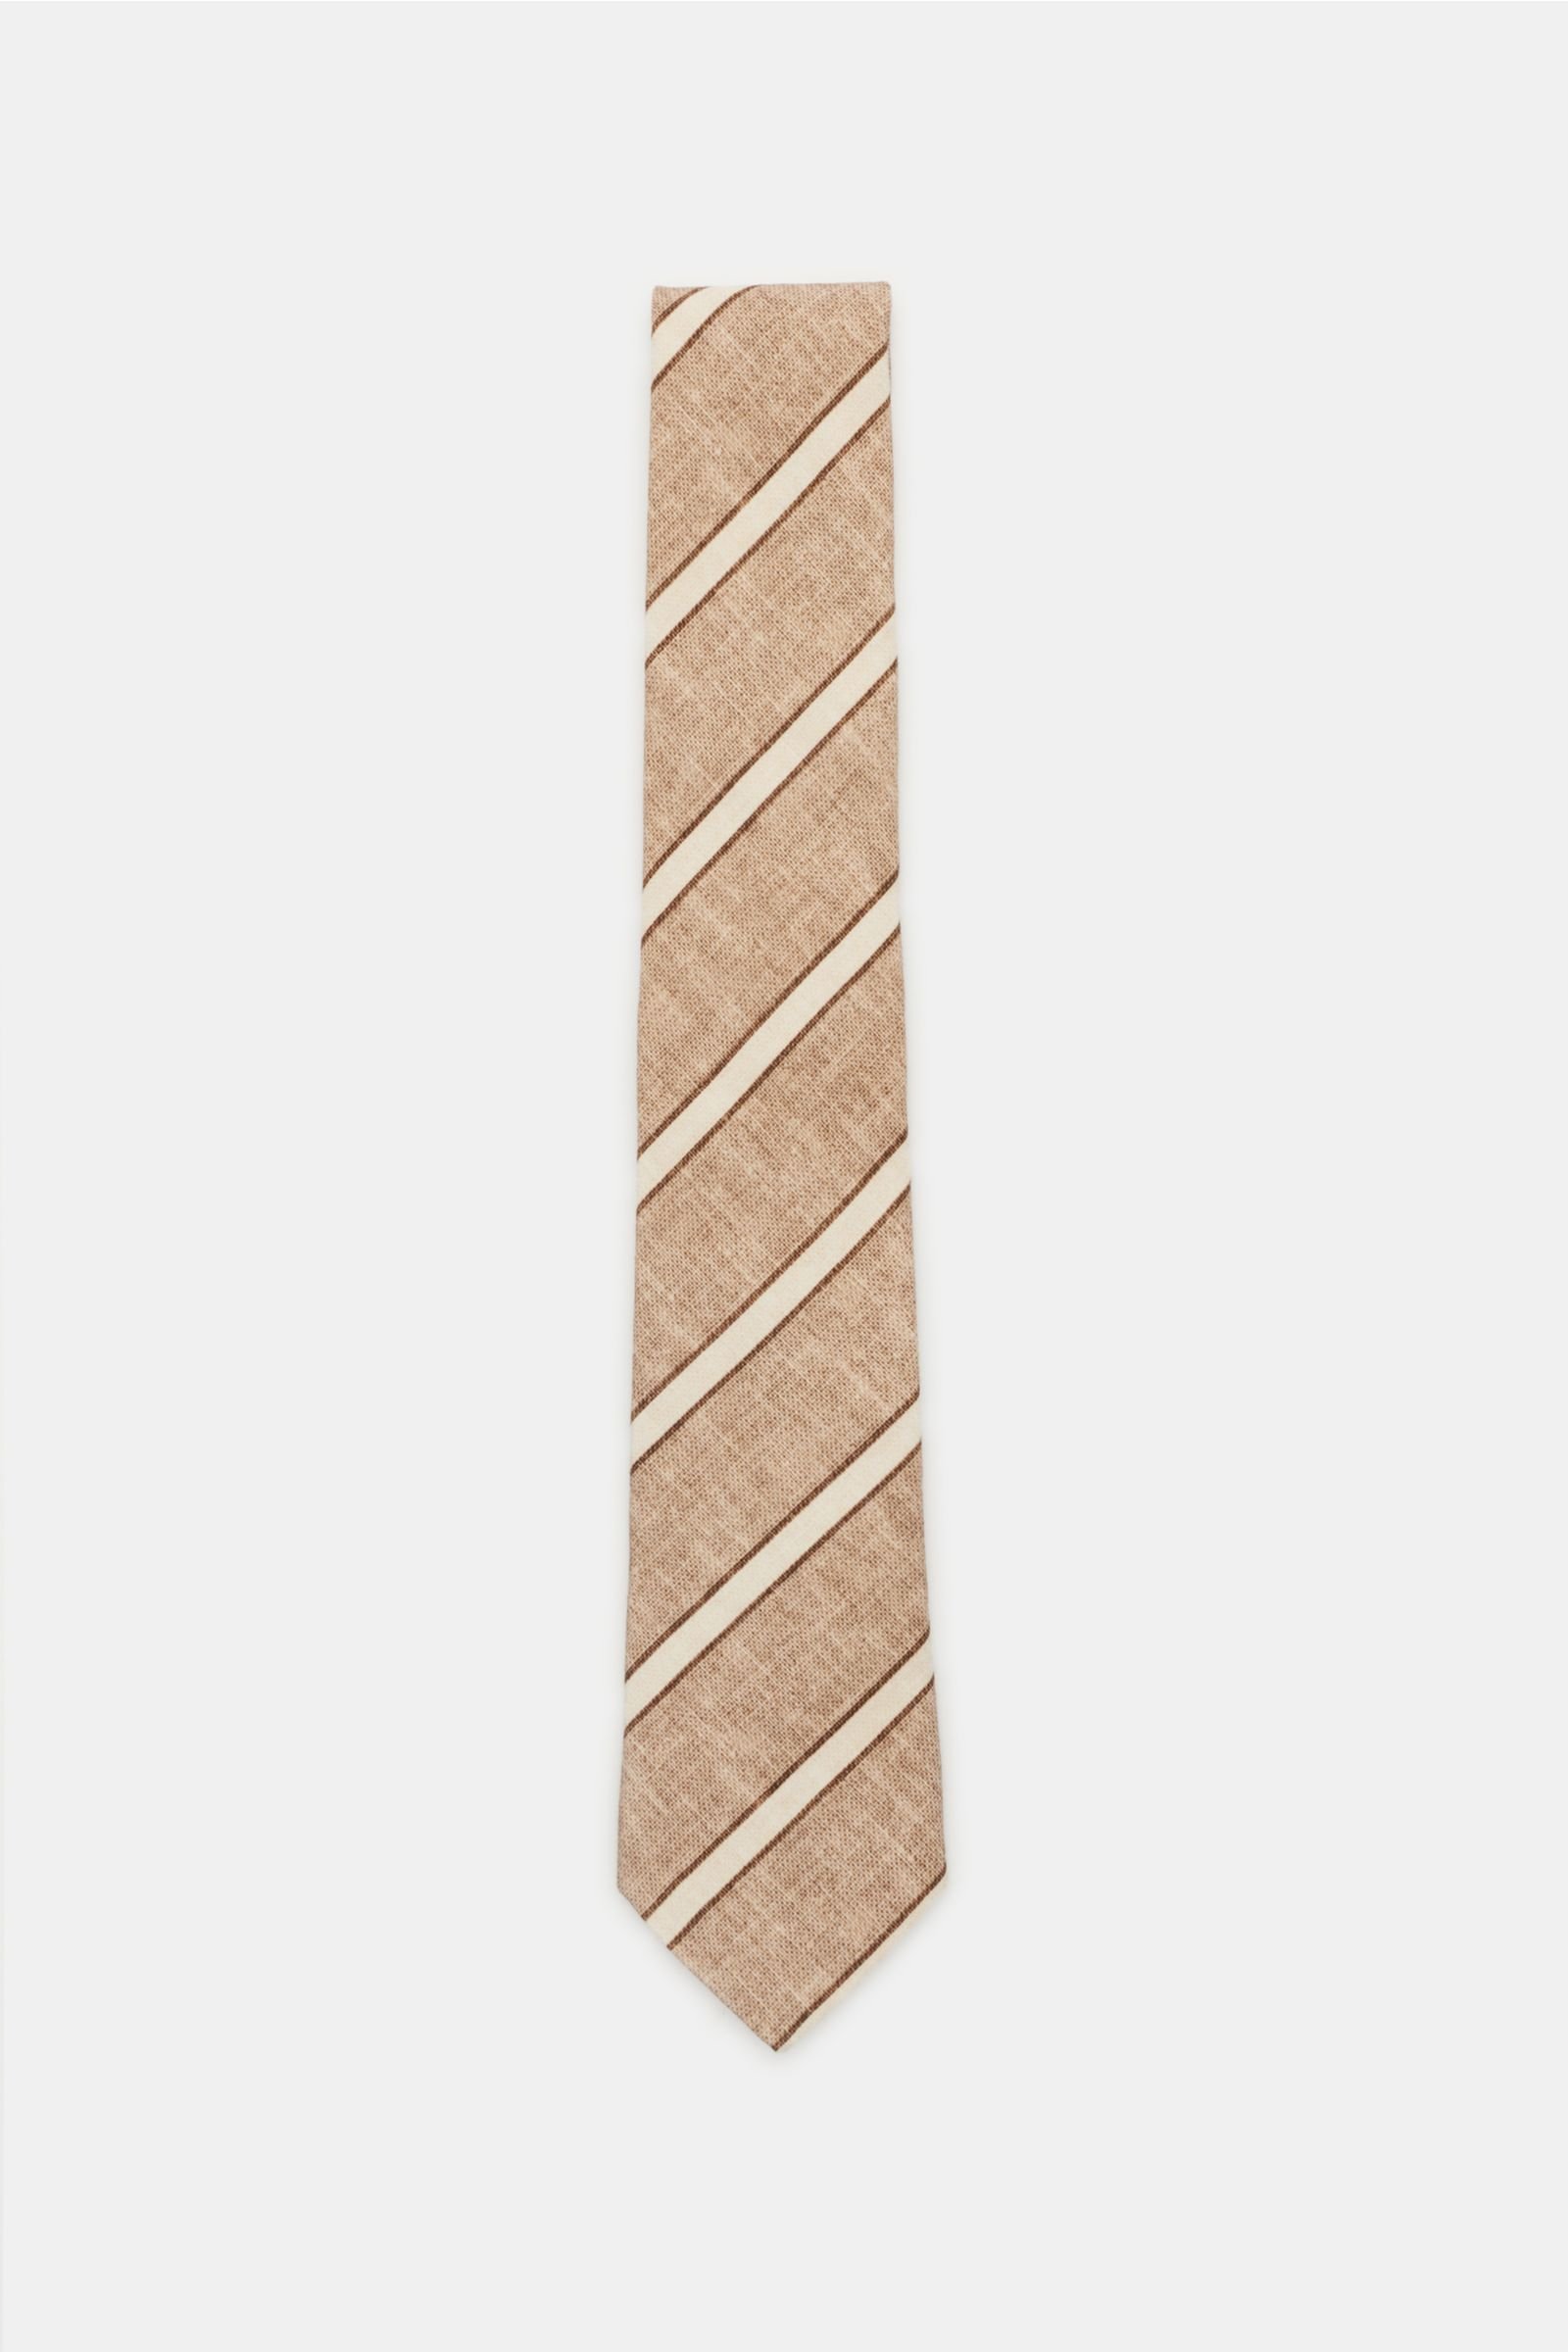 Tie brown/beige striped